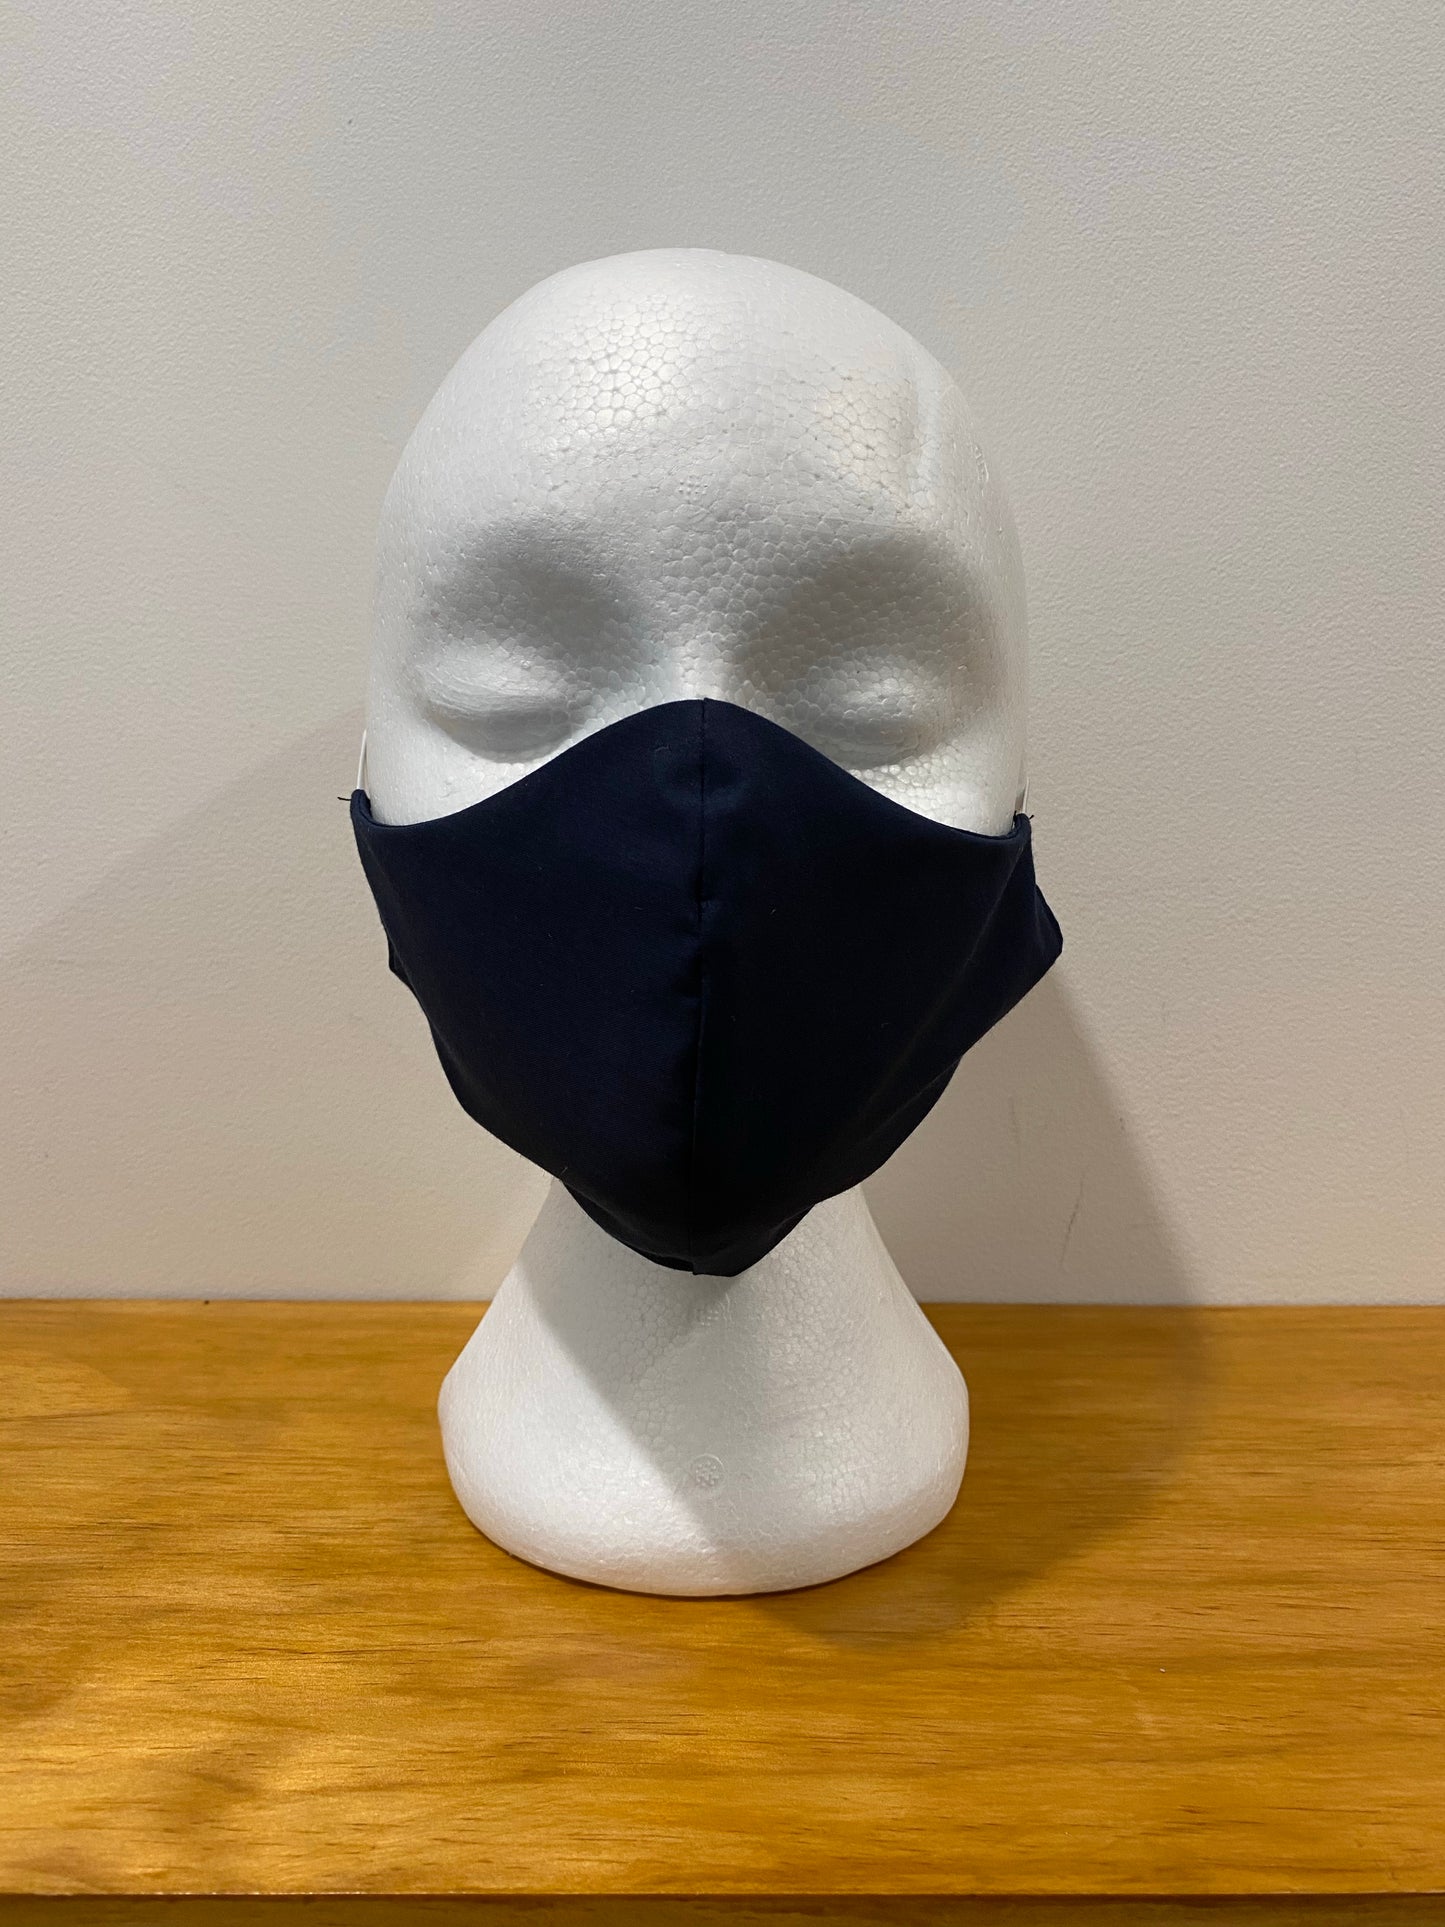 Navy Face Mask